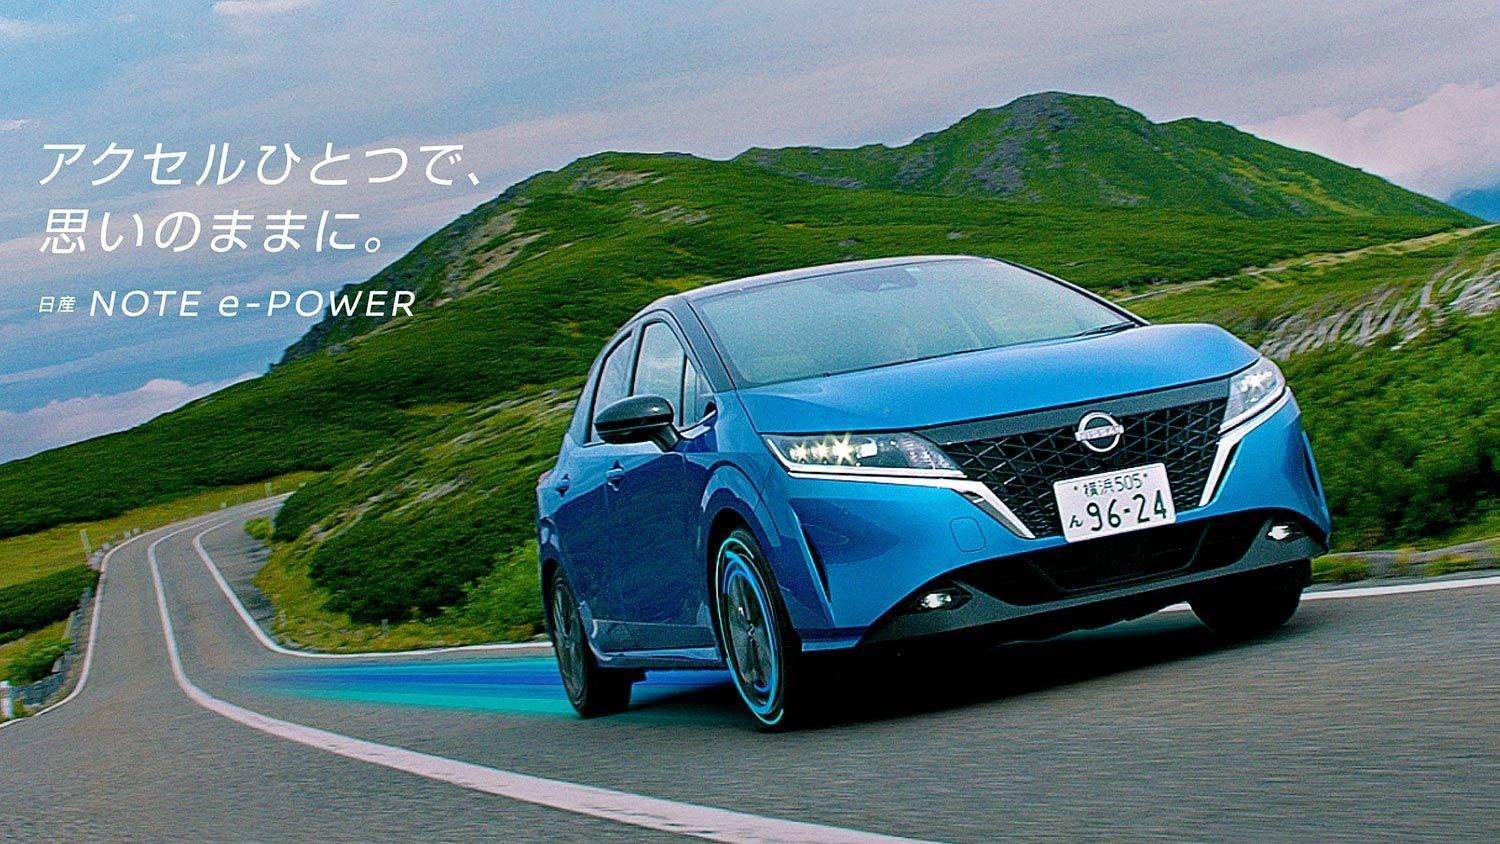 日产在日本召回超48万辆电动汽车 原因是发动机可能存在无法运行的风险